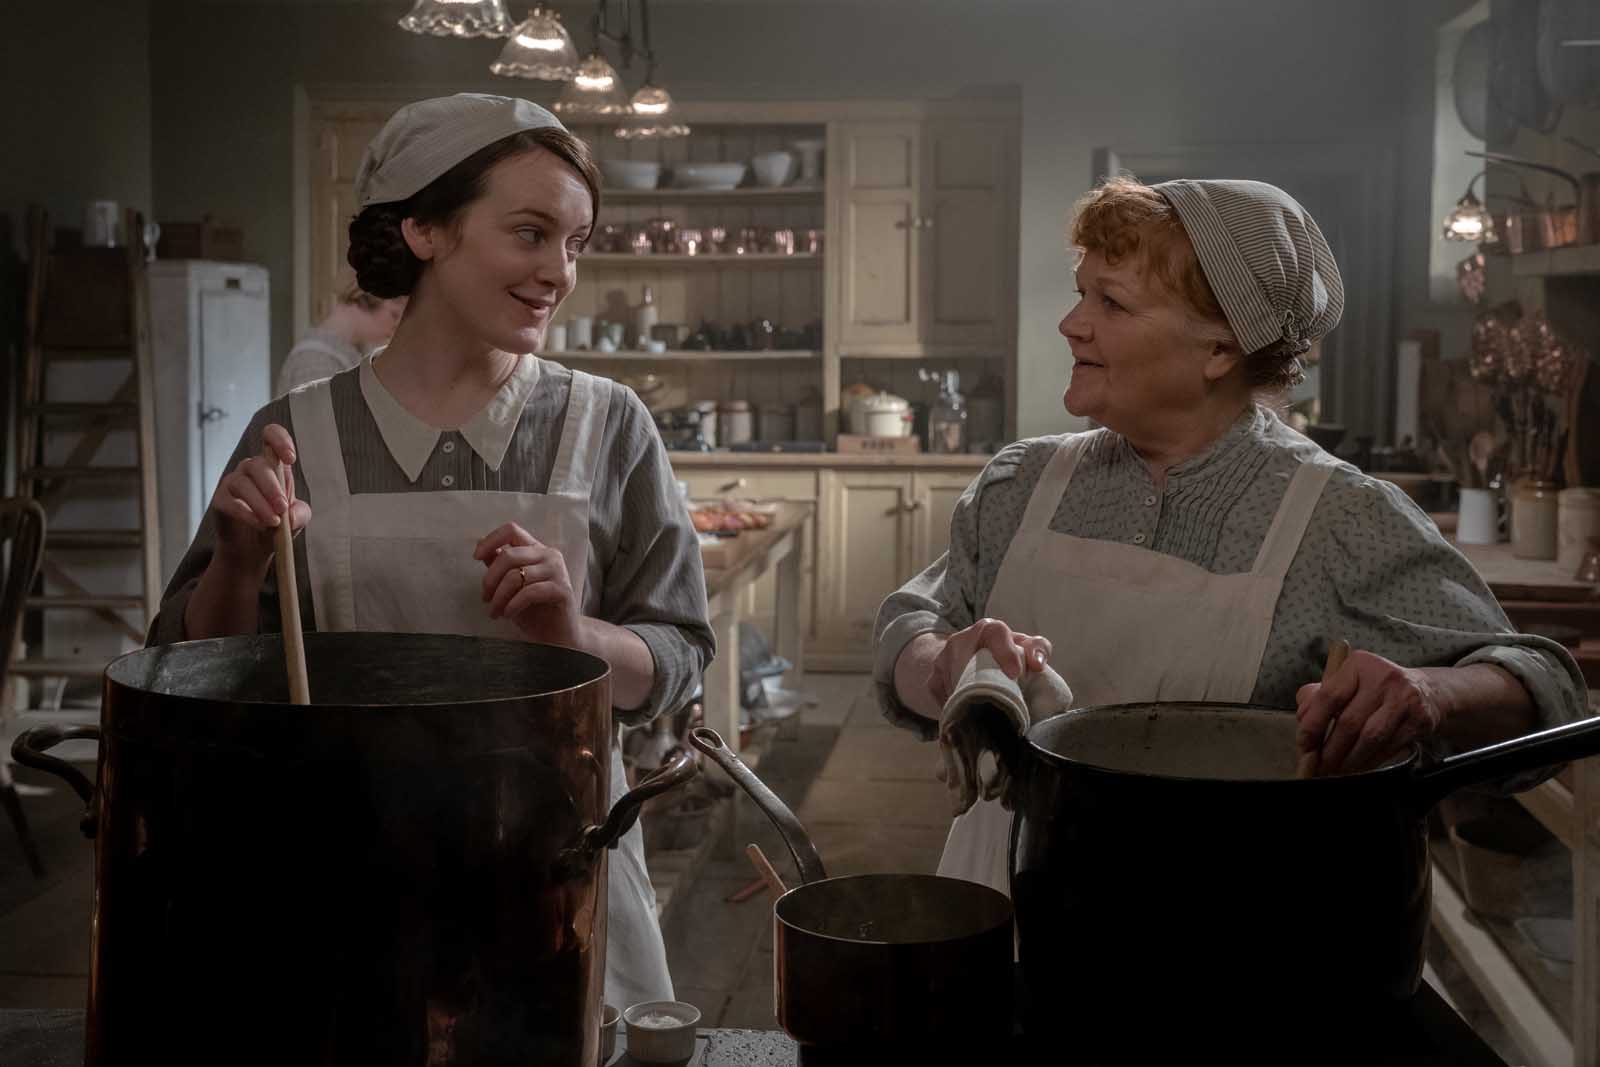 Szenenbild 5 vom Film Downton Abbey 2: Eine neue Ära 